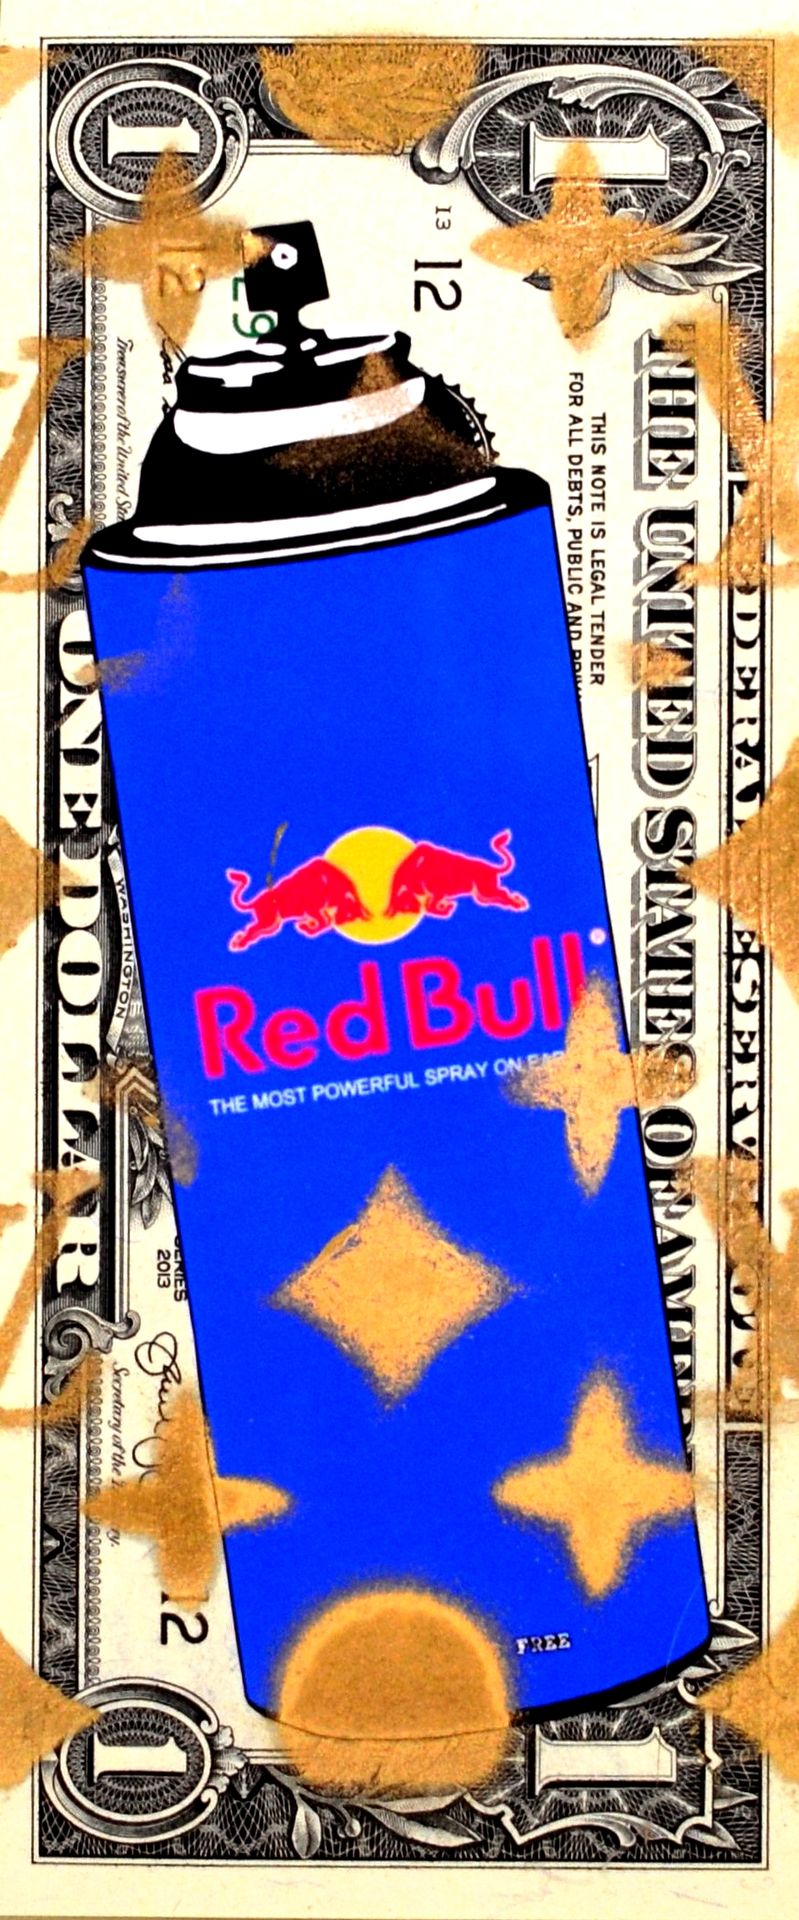 Death NYC Tod NYC

Red Bull Spray, 2015

Collage und Mischtechnik auf Banknote

&hellip;